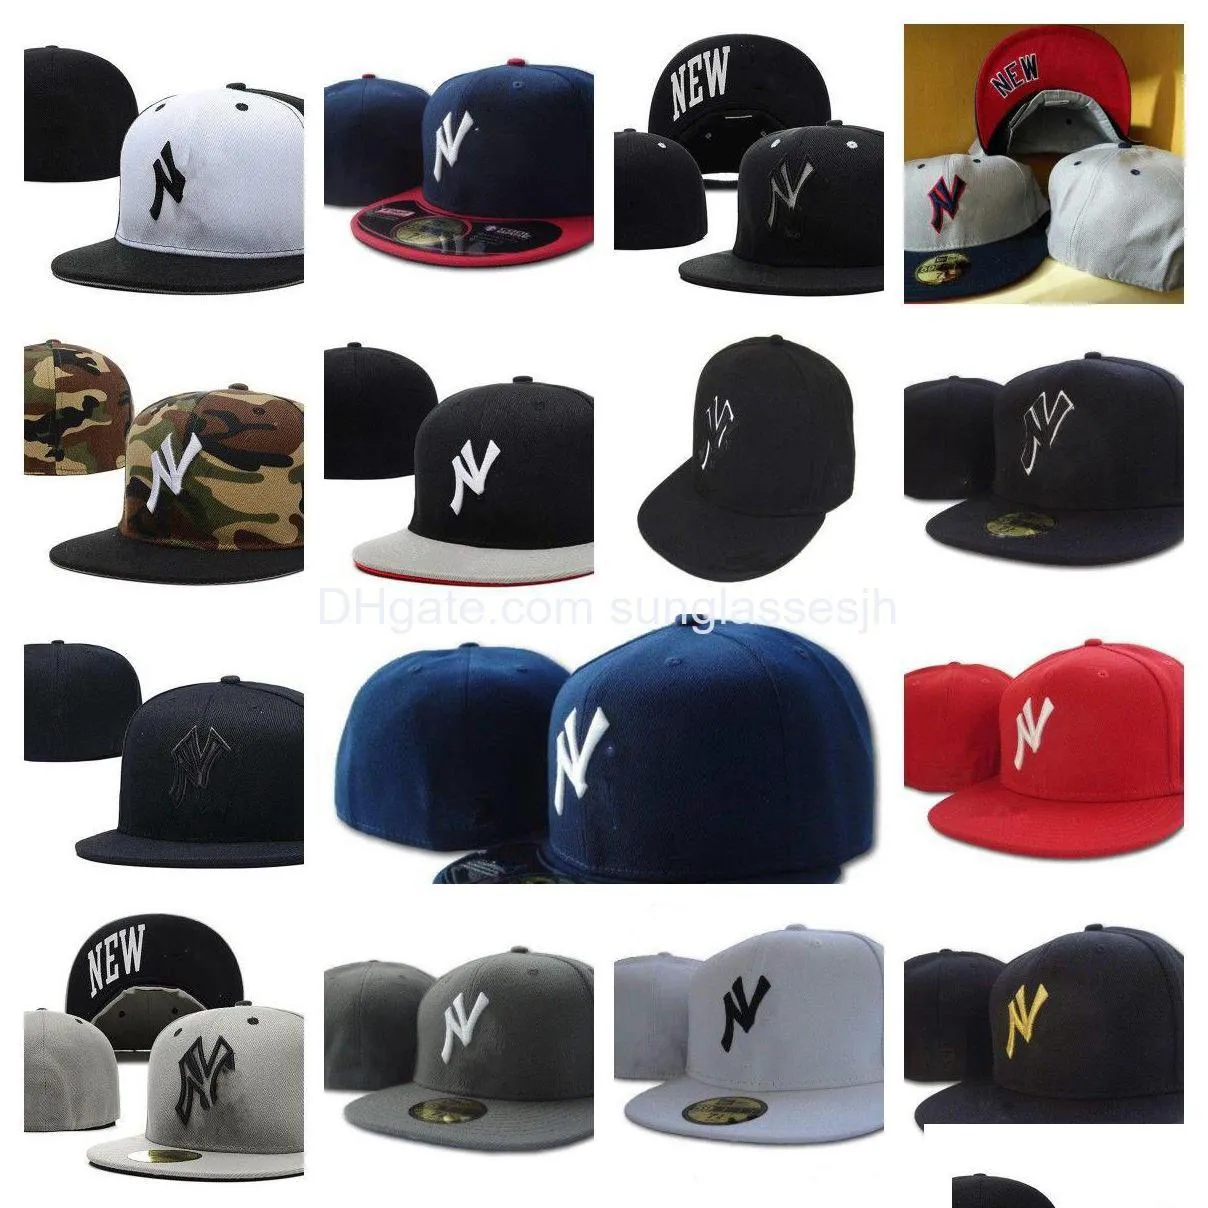 ボールキャップフィットスナップバック帽子スポーツすべてのチームユニセックスデザイナーコットンフレックスバスケットボールマン刺繍帽子フットボール野球ホッケーs dhxgi